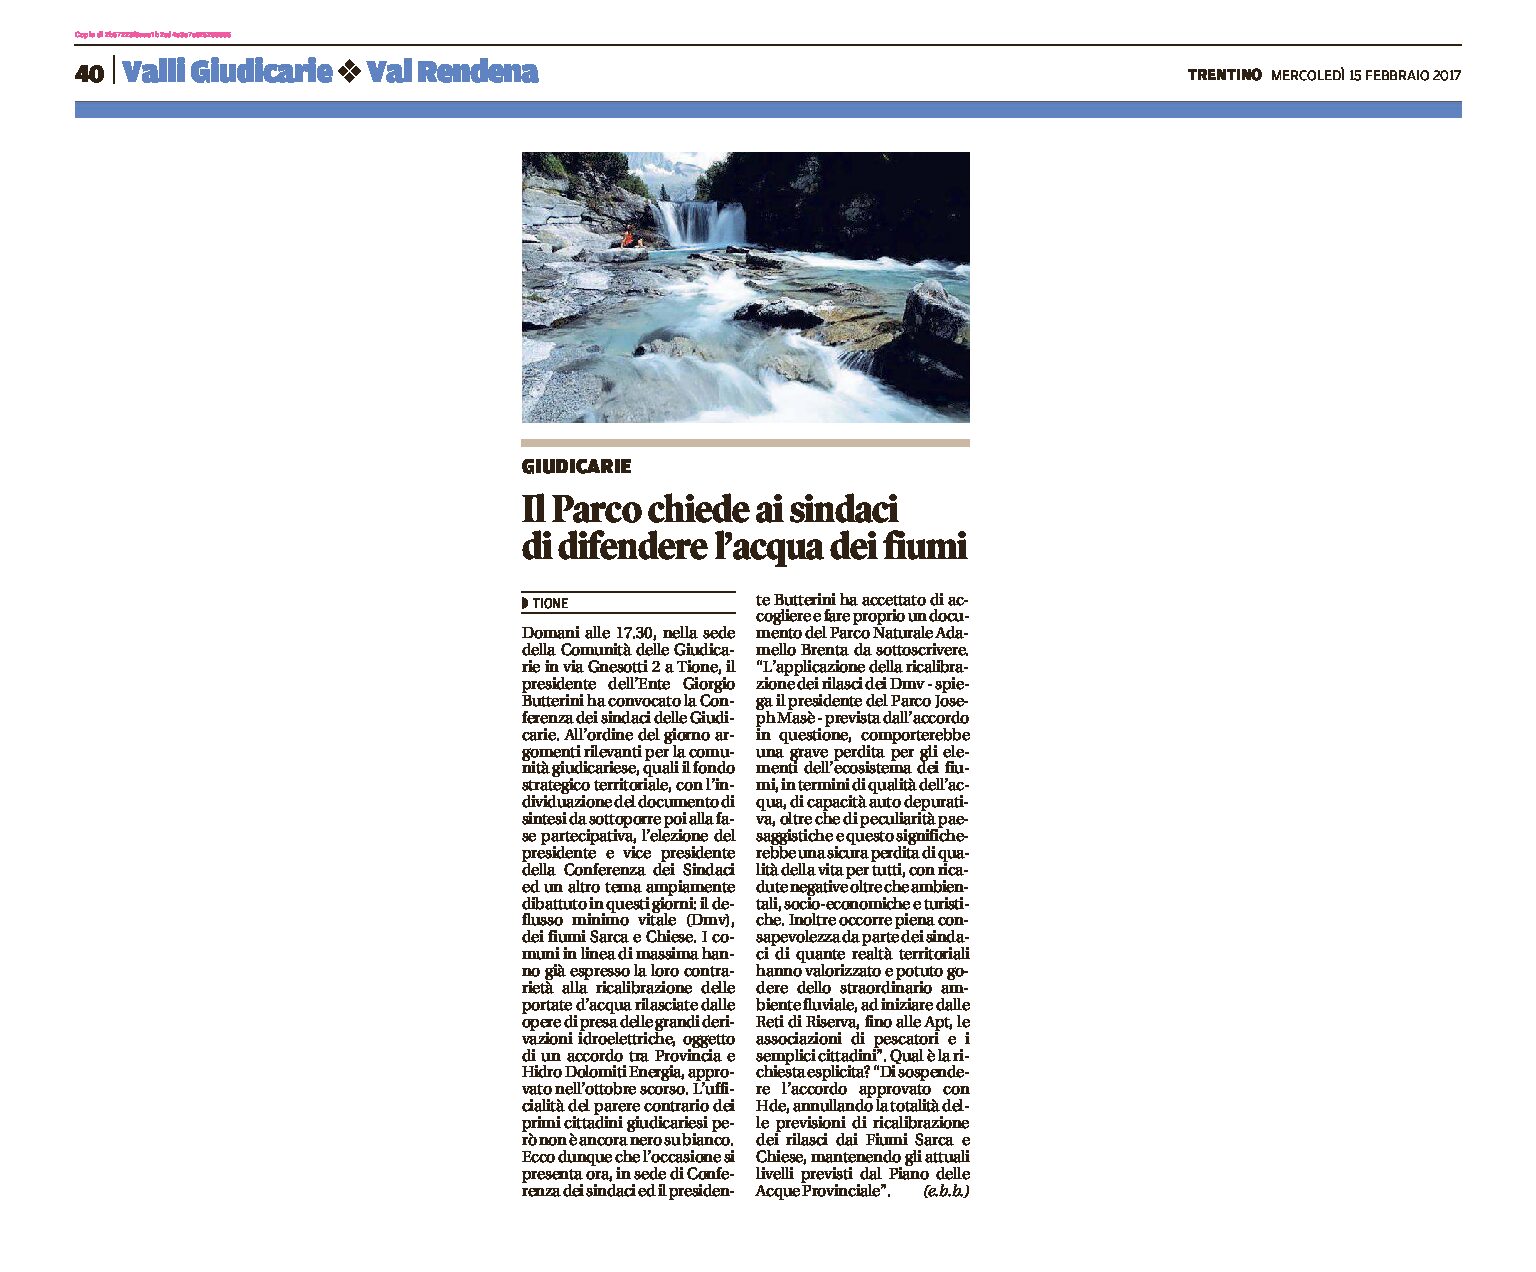 Parco Adamello Brenta: chiede ai sindaci di difendere l’acqua dei fiumi Sarca e Chiese